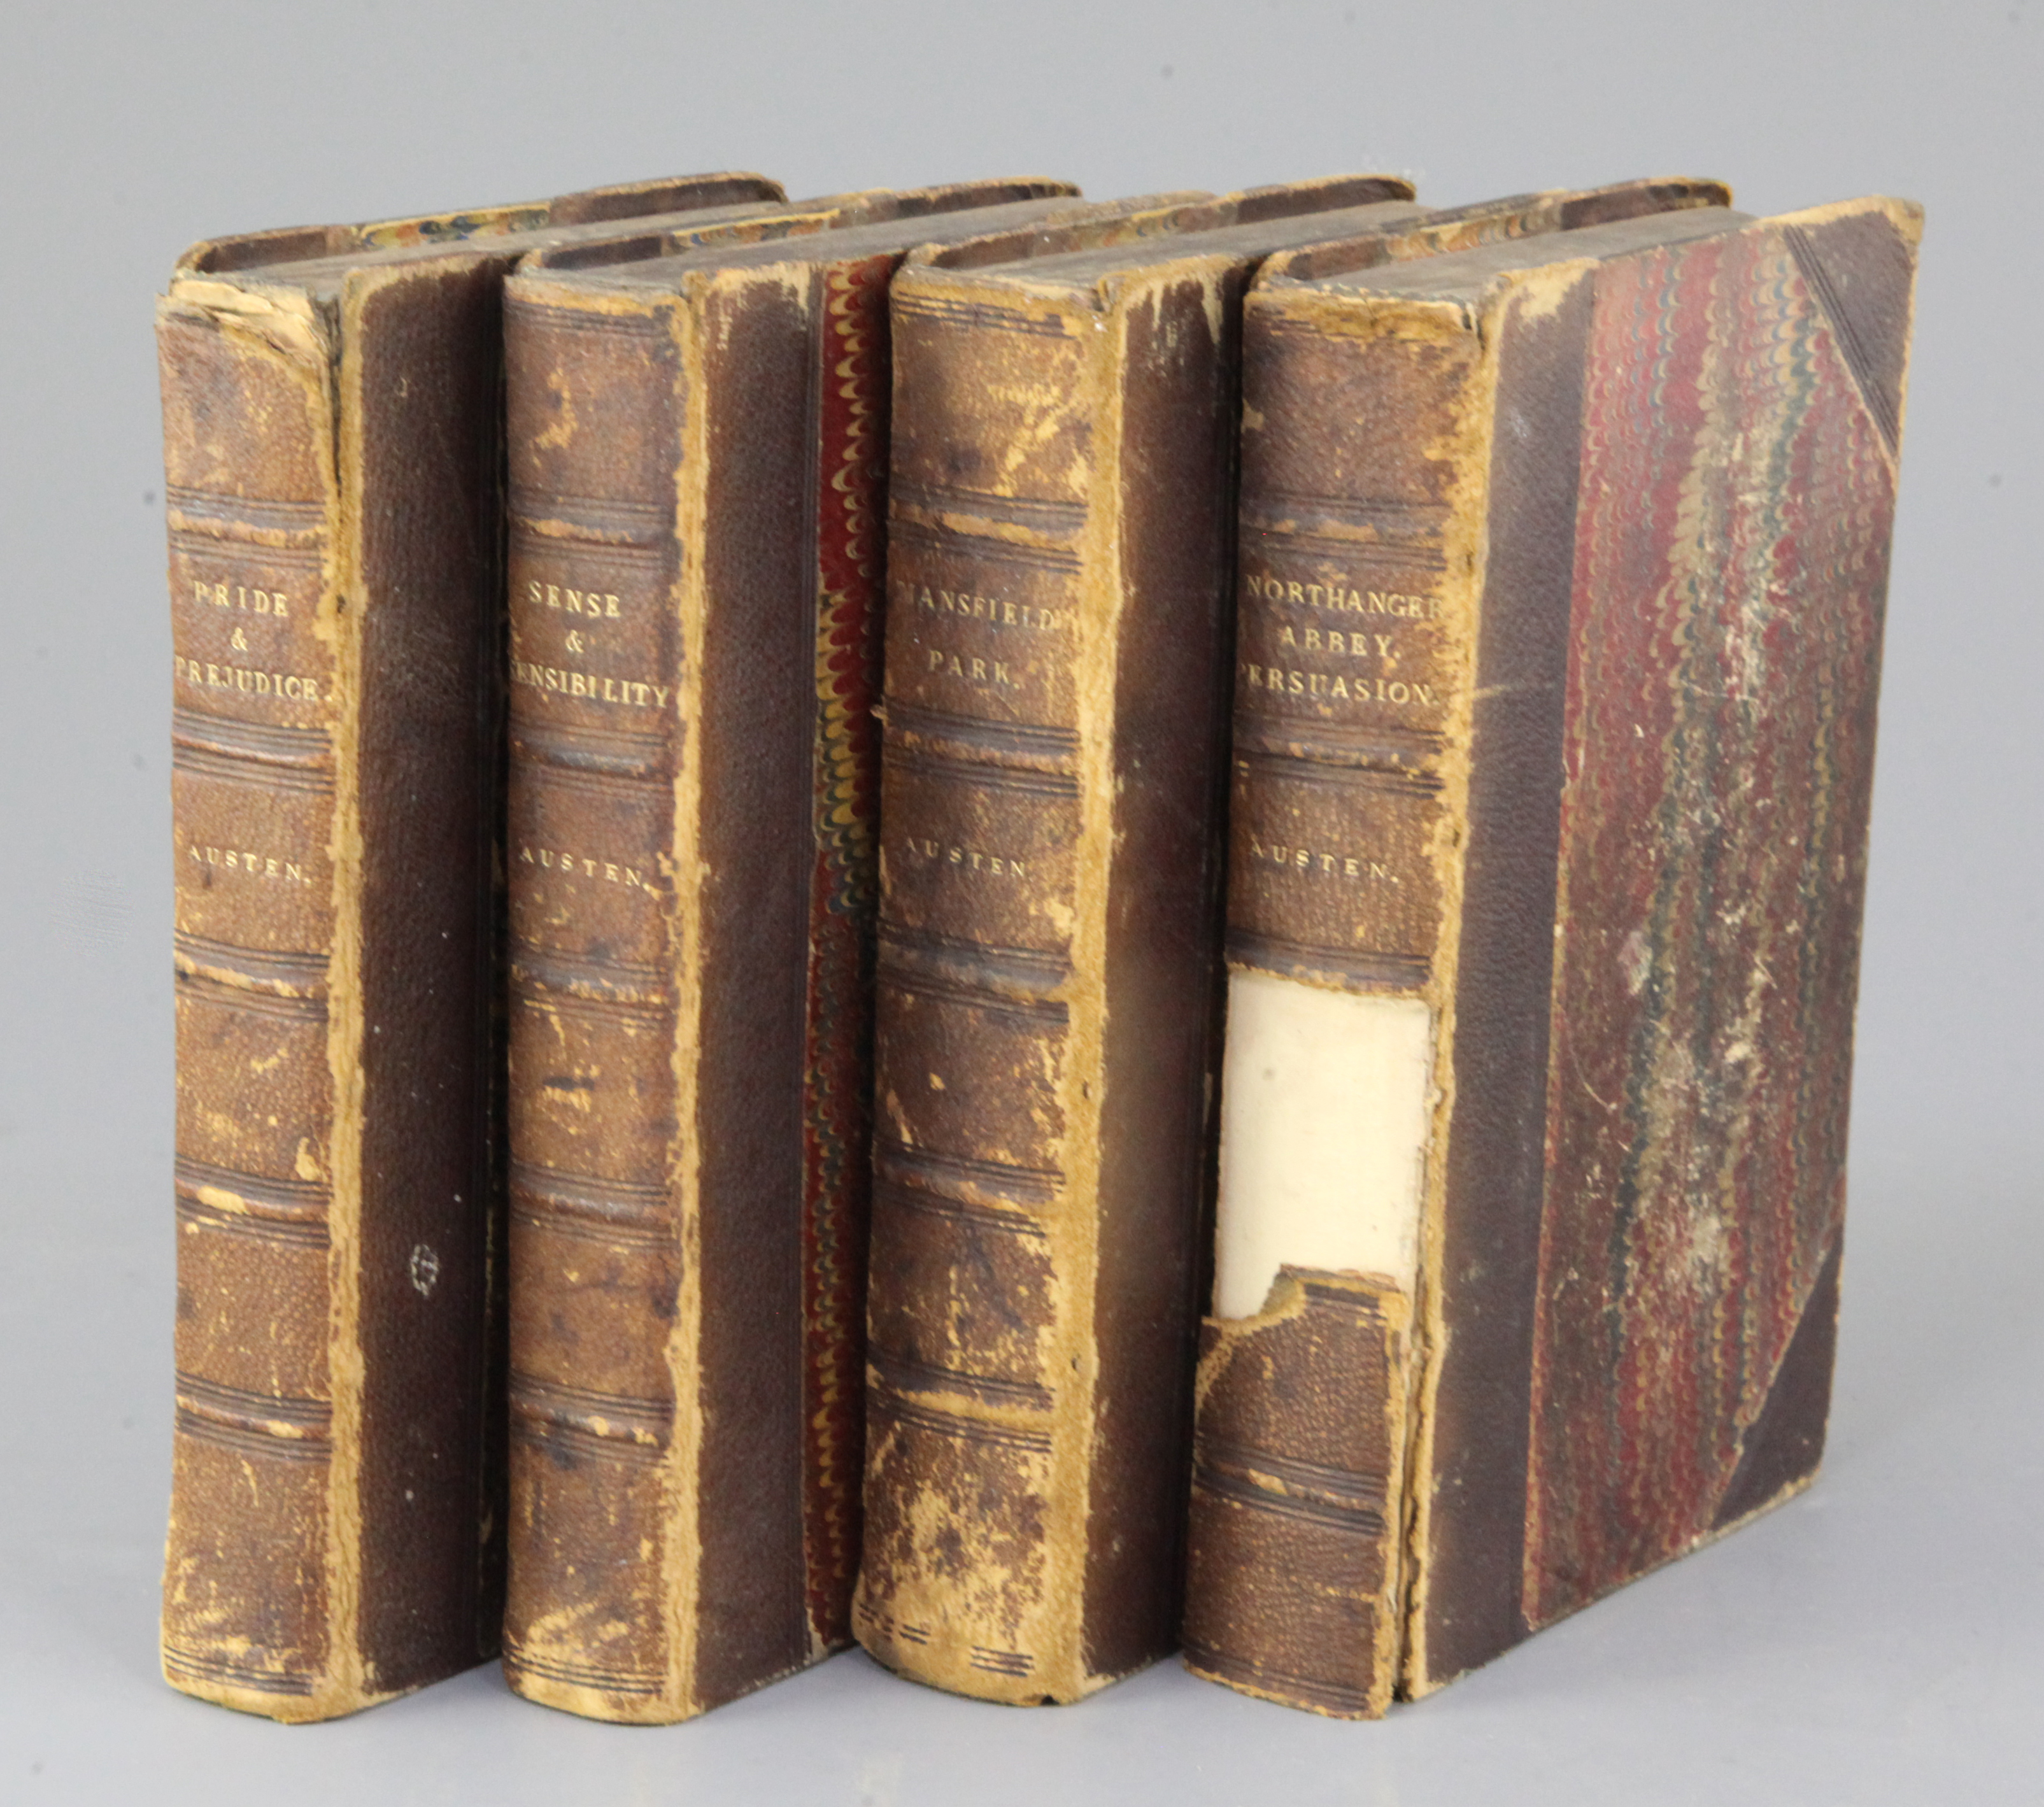 AUSTEN, Jane, Novels by Miss Jane Austen, Richard Bentley, 1833 in three volumes, and additional